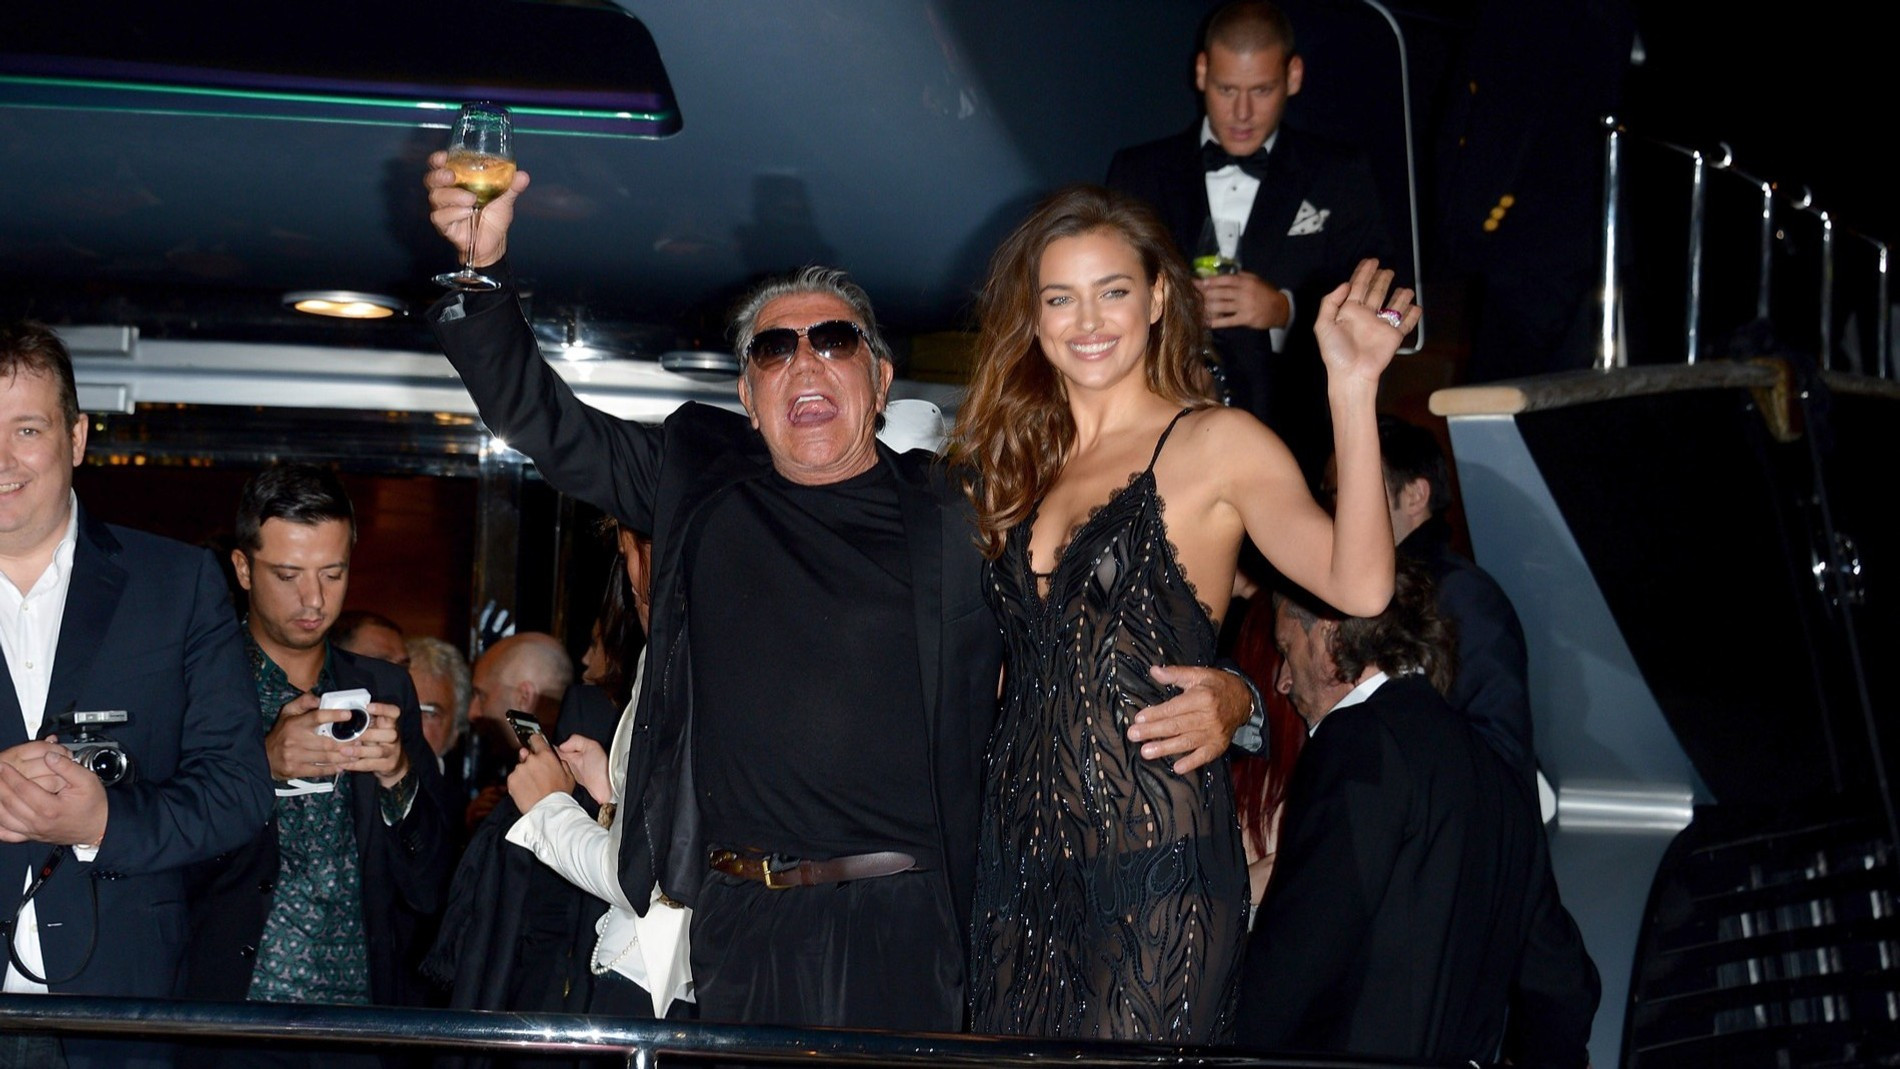 Роберто Кавалли и Ирина Шейк на вечеринке
Фото: Getty Images